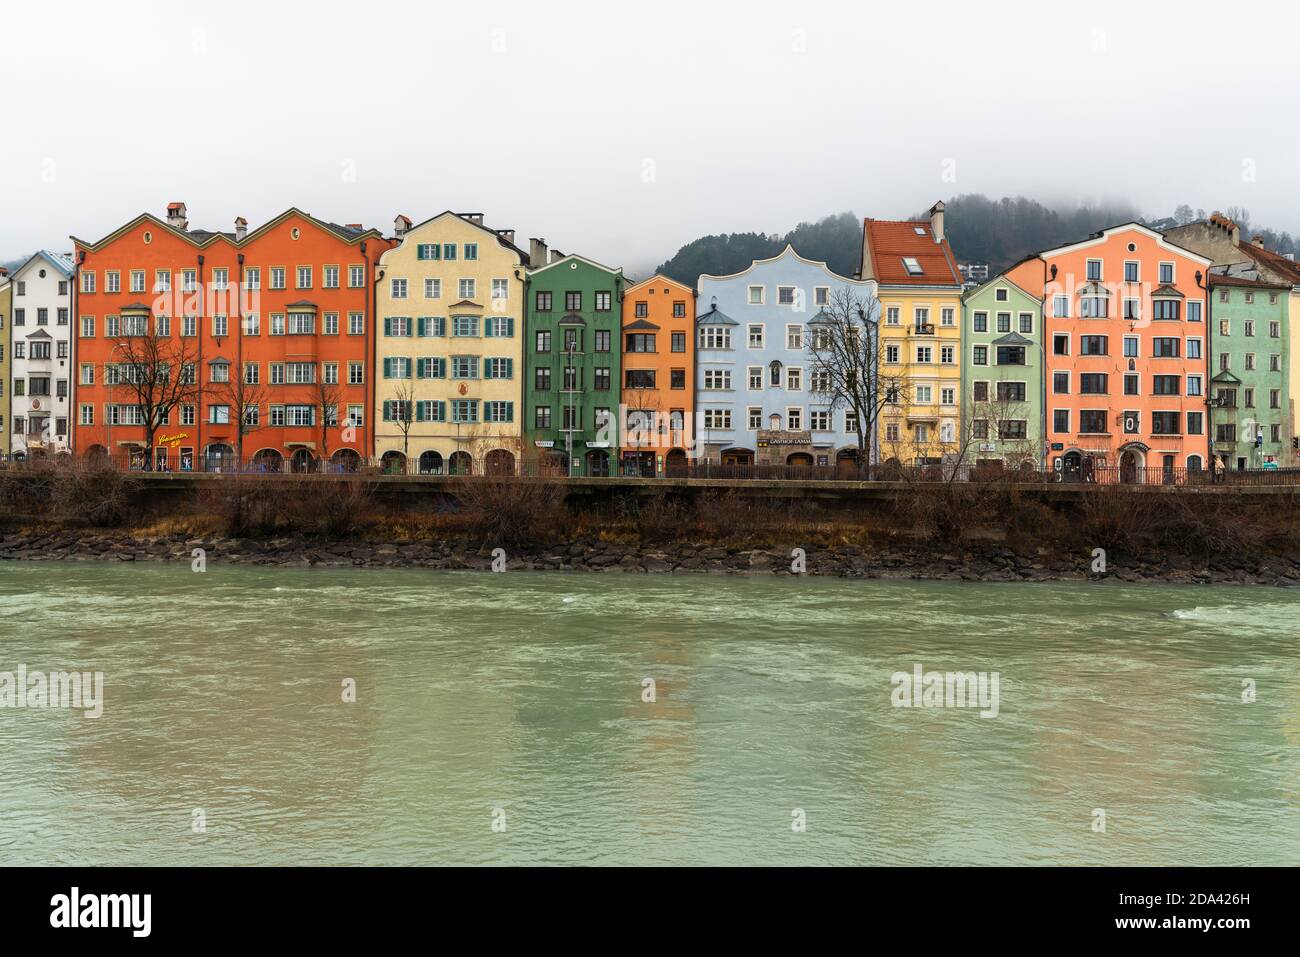 Façades colorées de maisons traditionnelles le long des rives de la rivière inn, Innsbruck, Tyrol, Autriche Banque D'Images